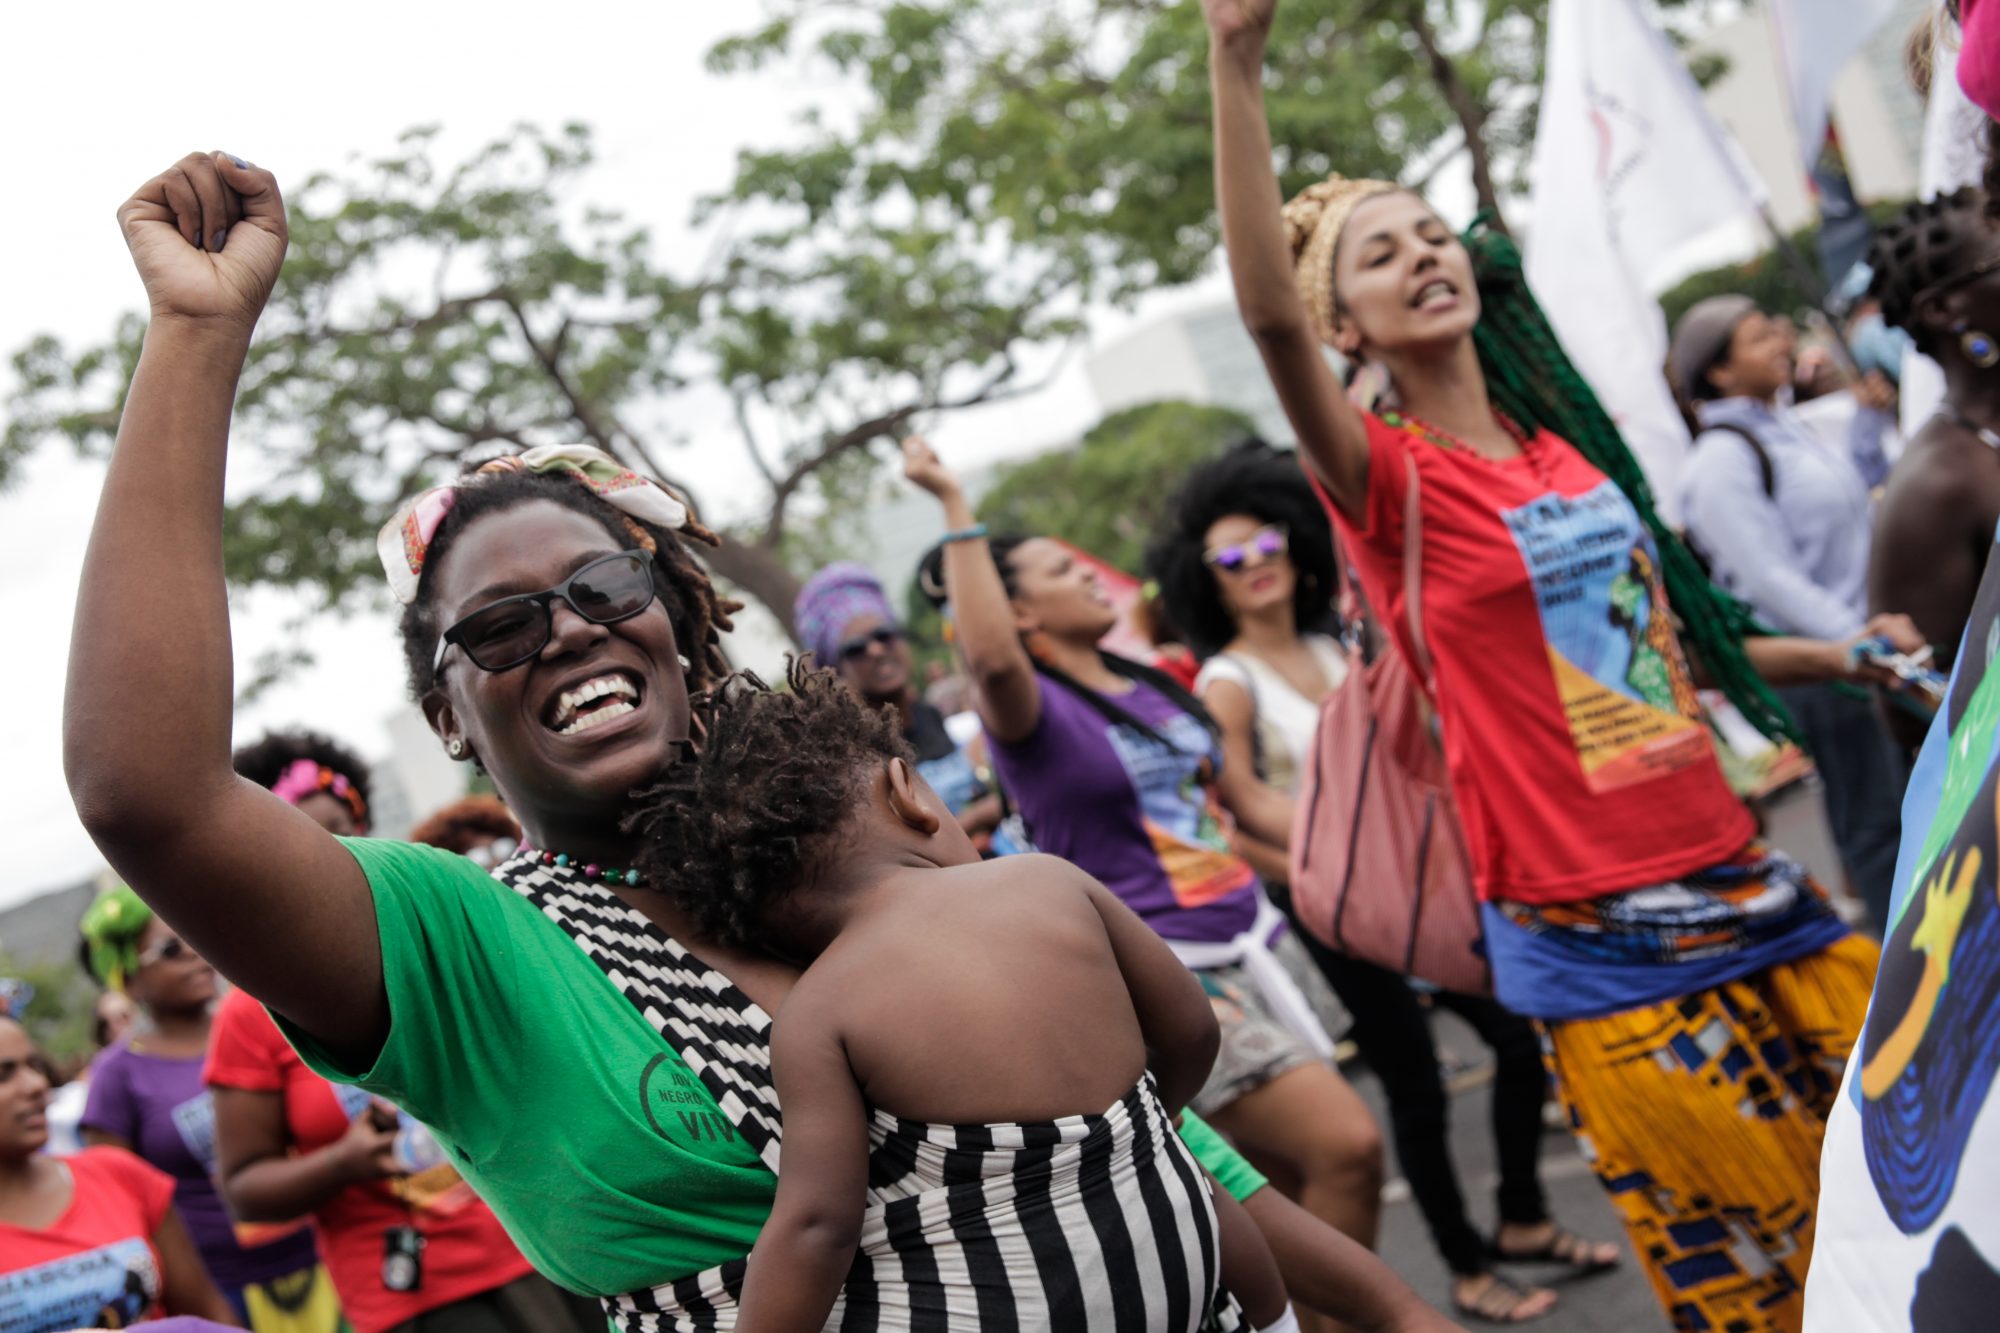 Marcha Das Mulheres Negras - Photo: Janine Moraes